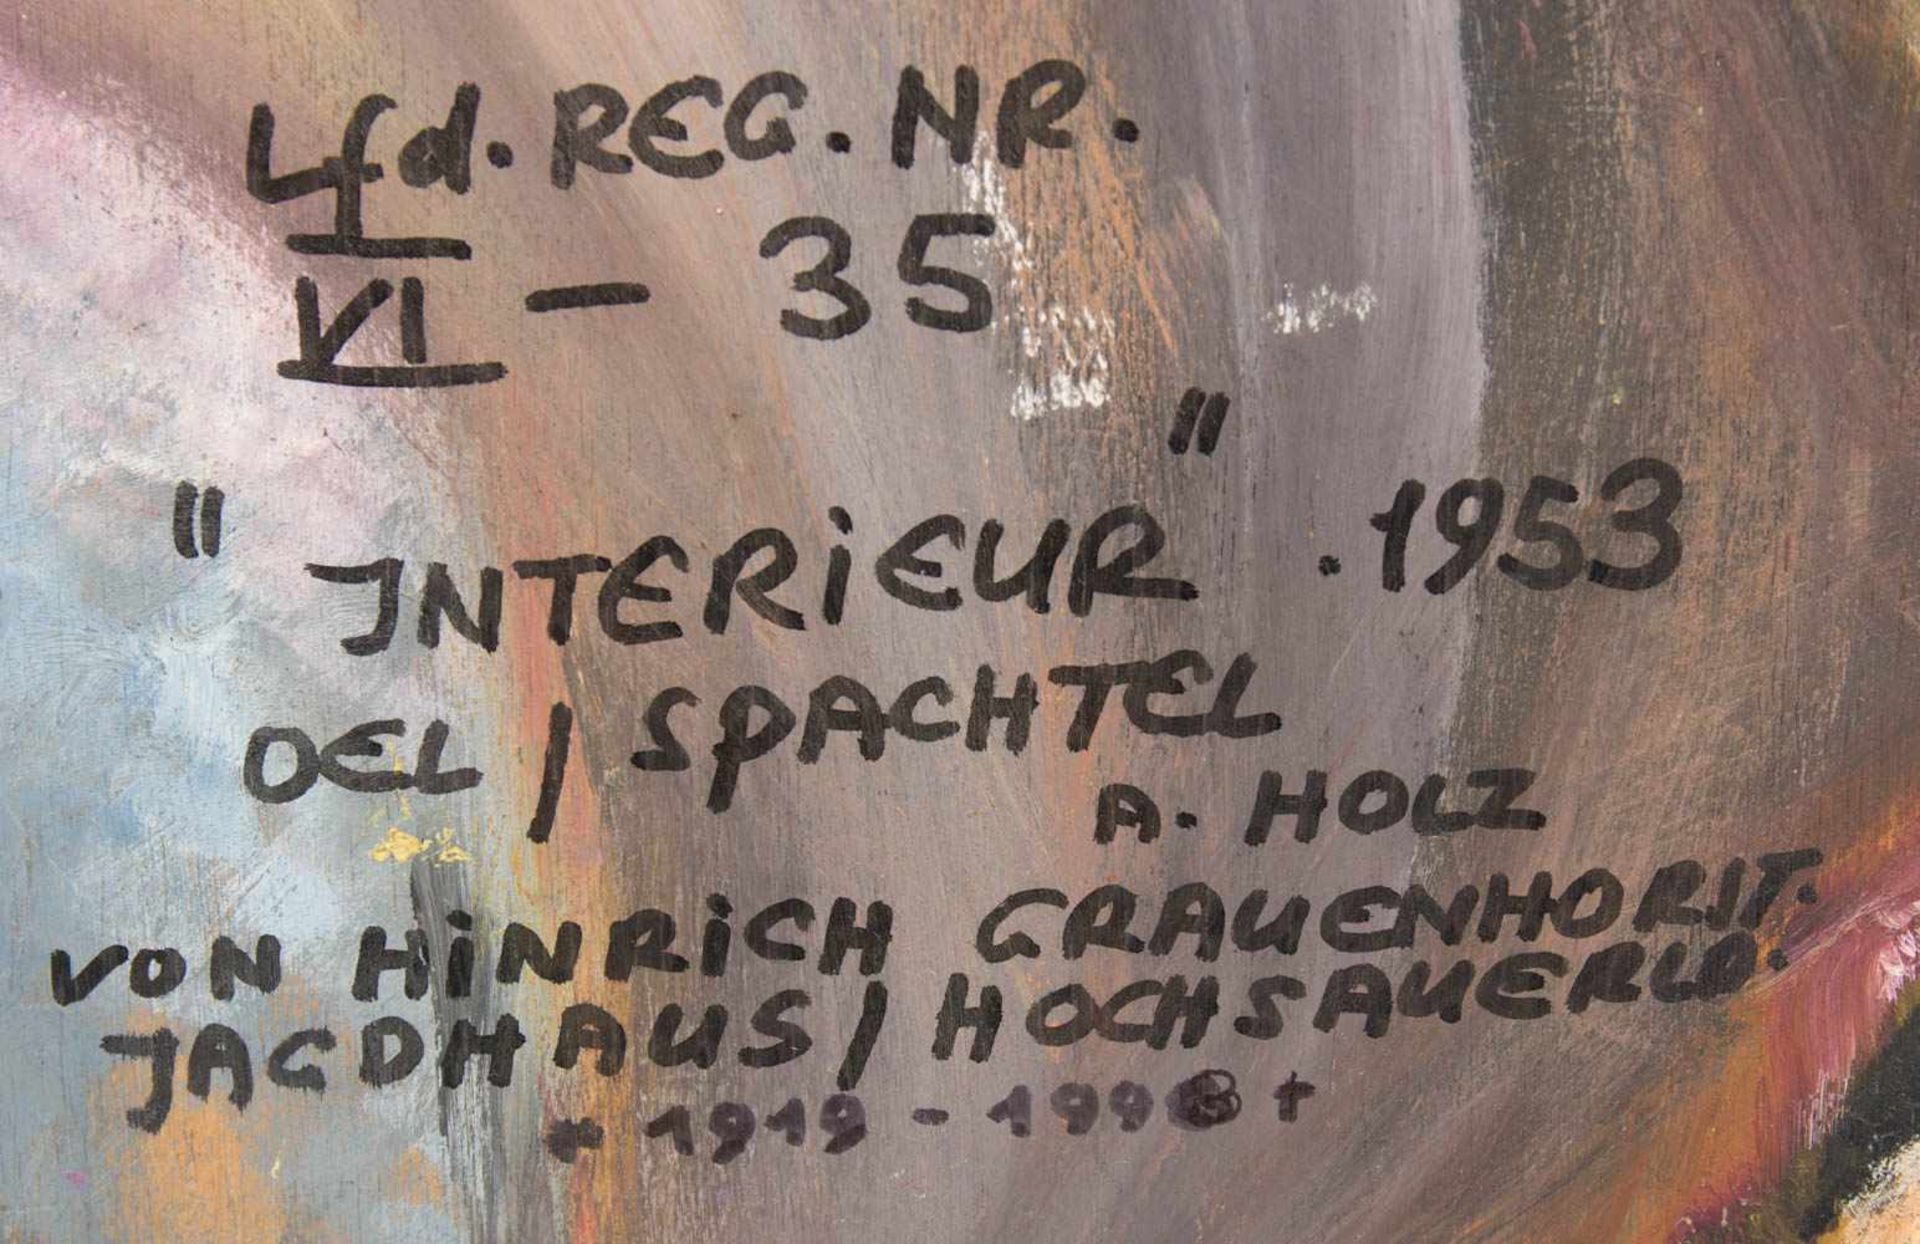 HINRICH GRAUENHORST, Interieur, Öl/Holz, Deutschland 1953.< - Bild 4 aus 5